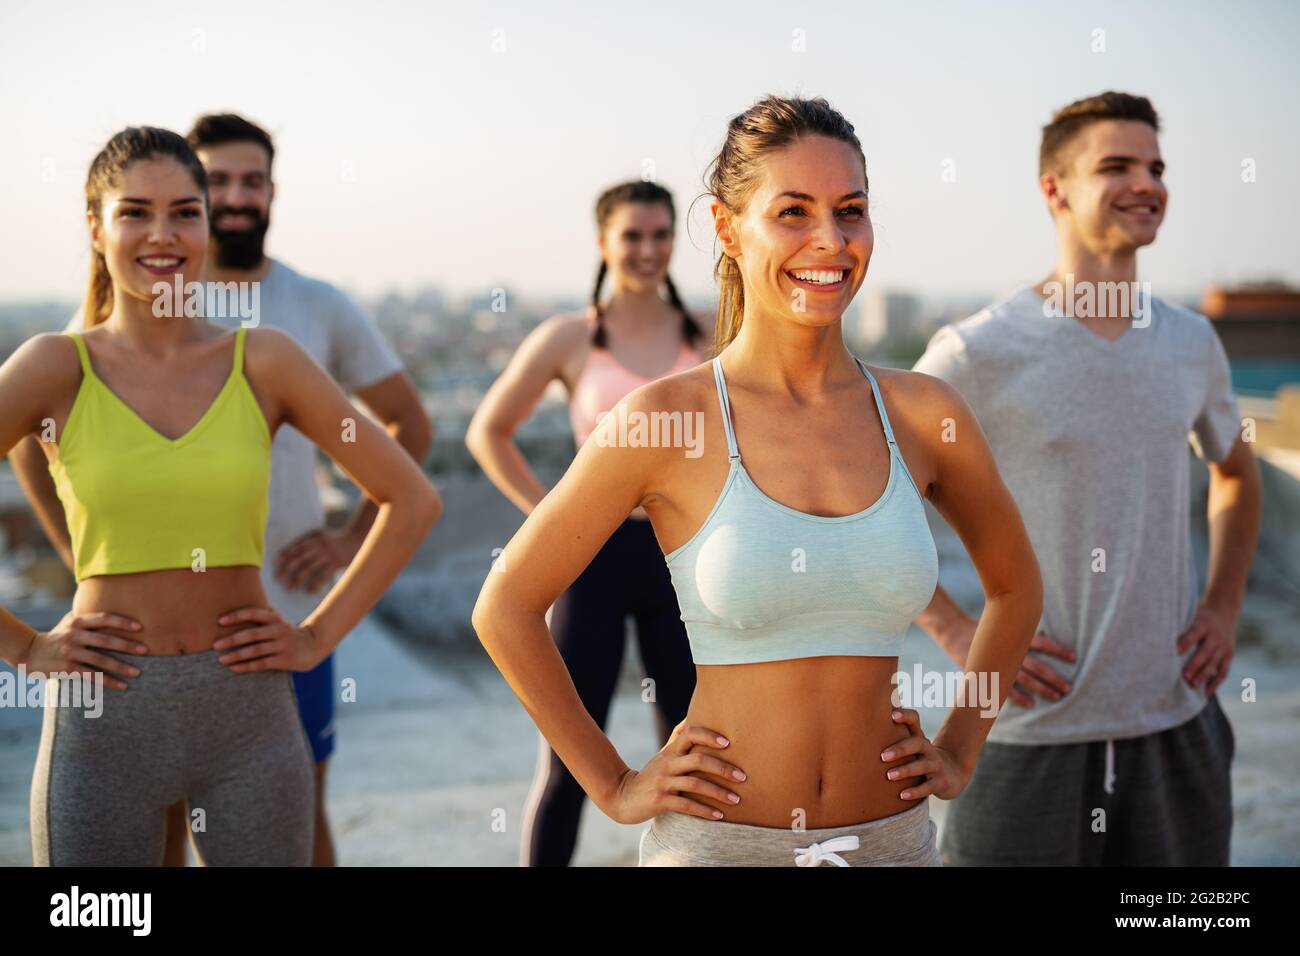 Gruppo di persone felici di fitness che si allenano insieme all'aperto, vivendo uno stile di vita sano e attivo Foto Stock